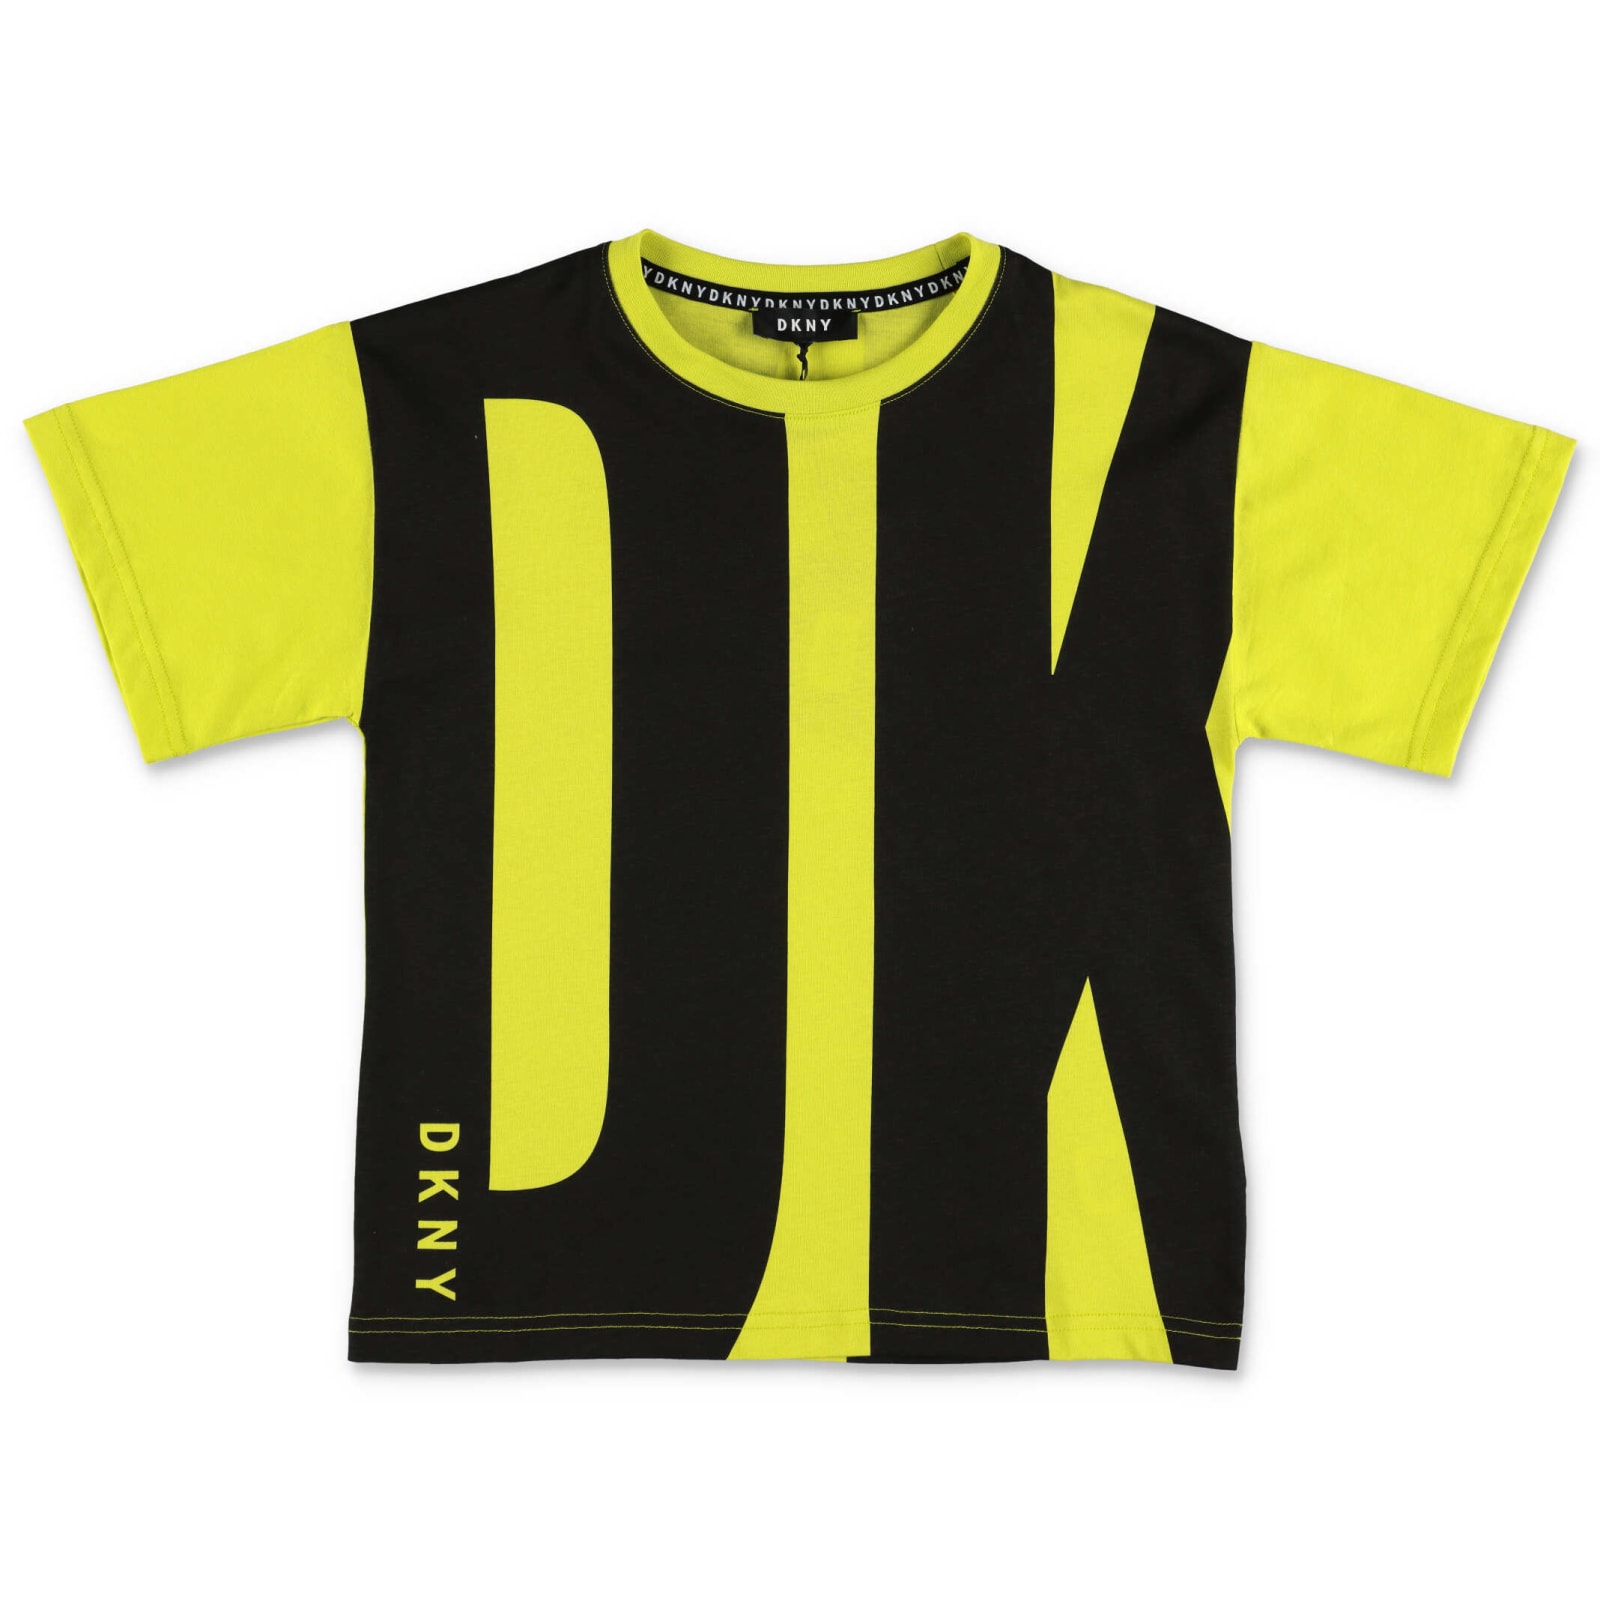 Dkny T-shirt Gialla E Nera In Jersey Di Cotone